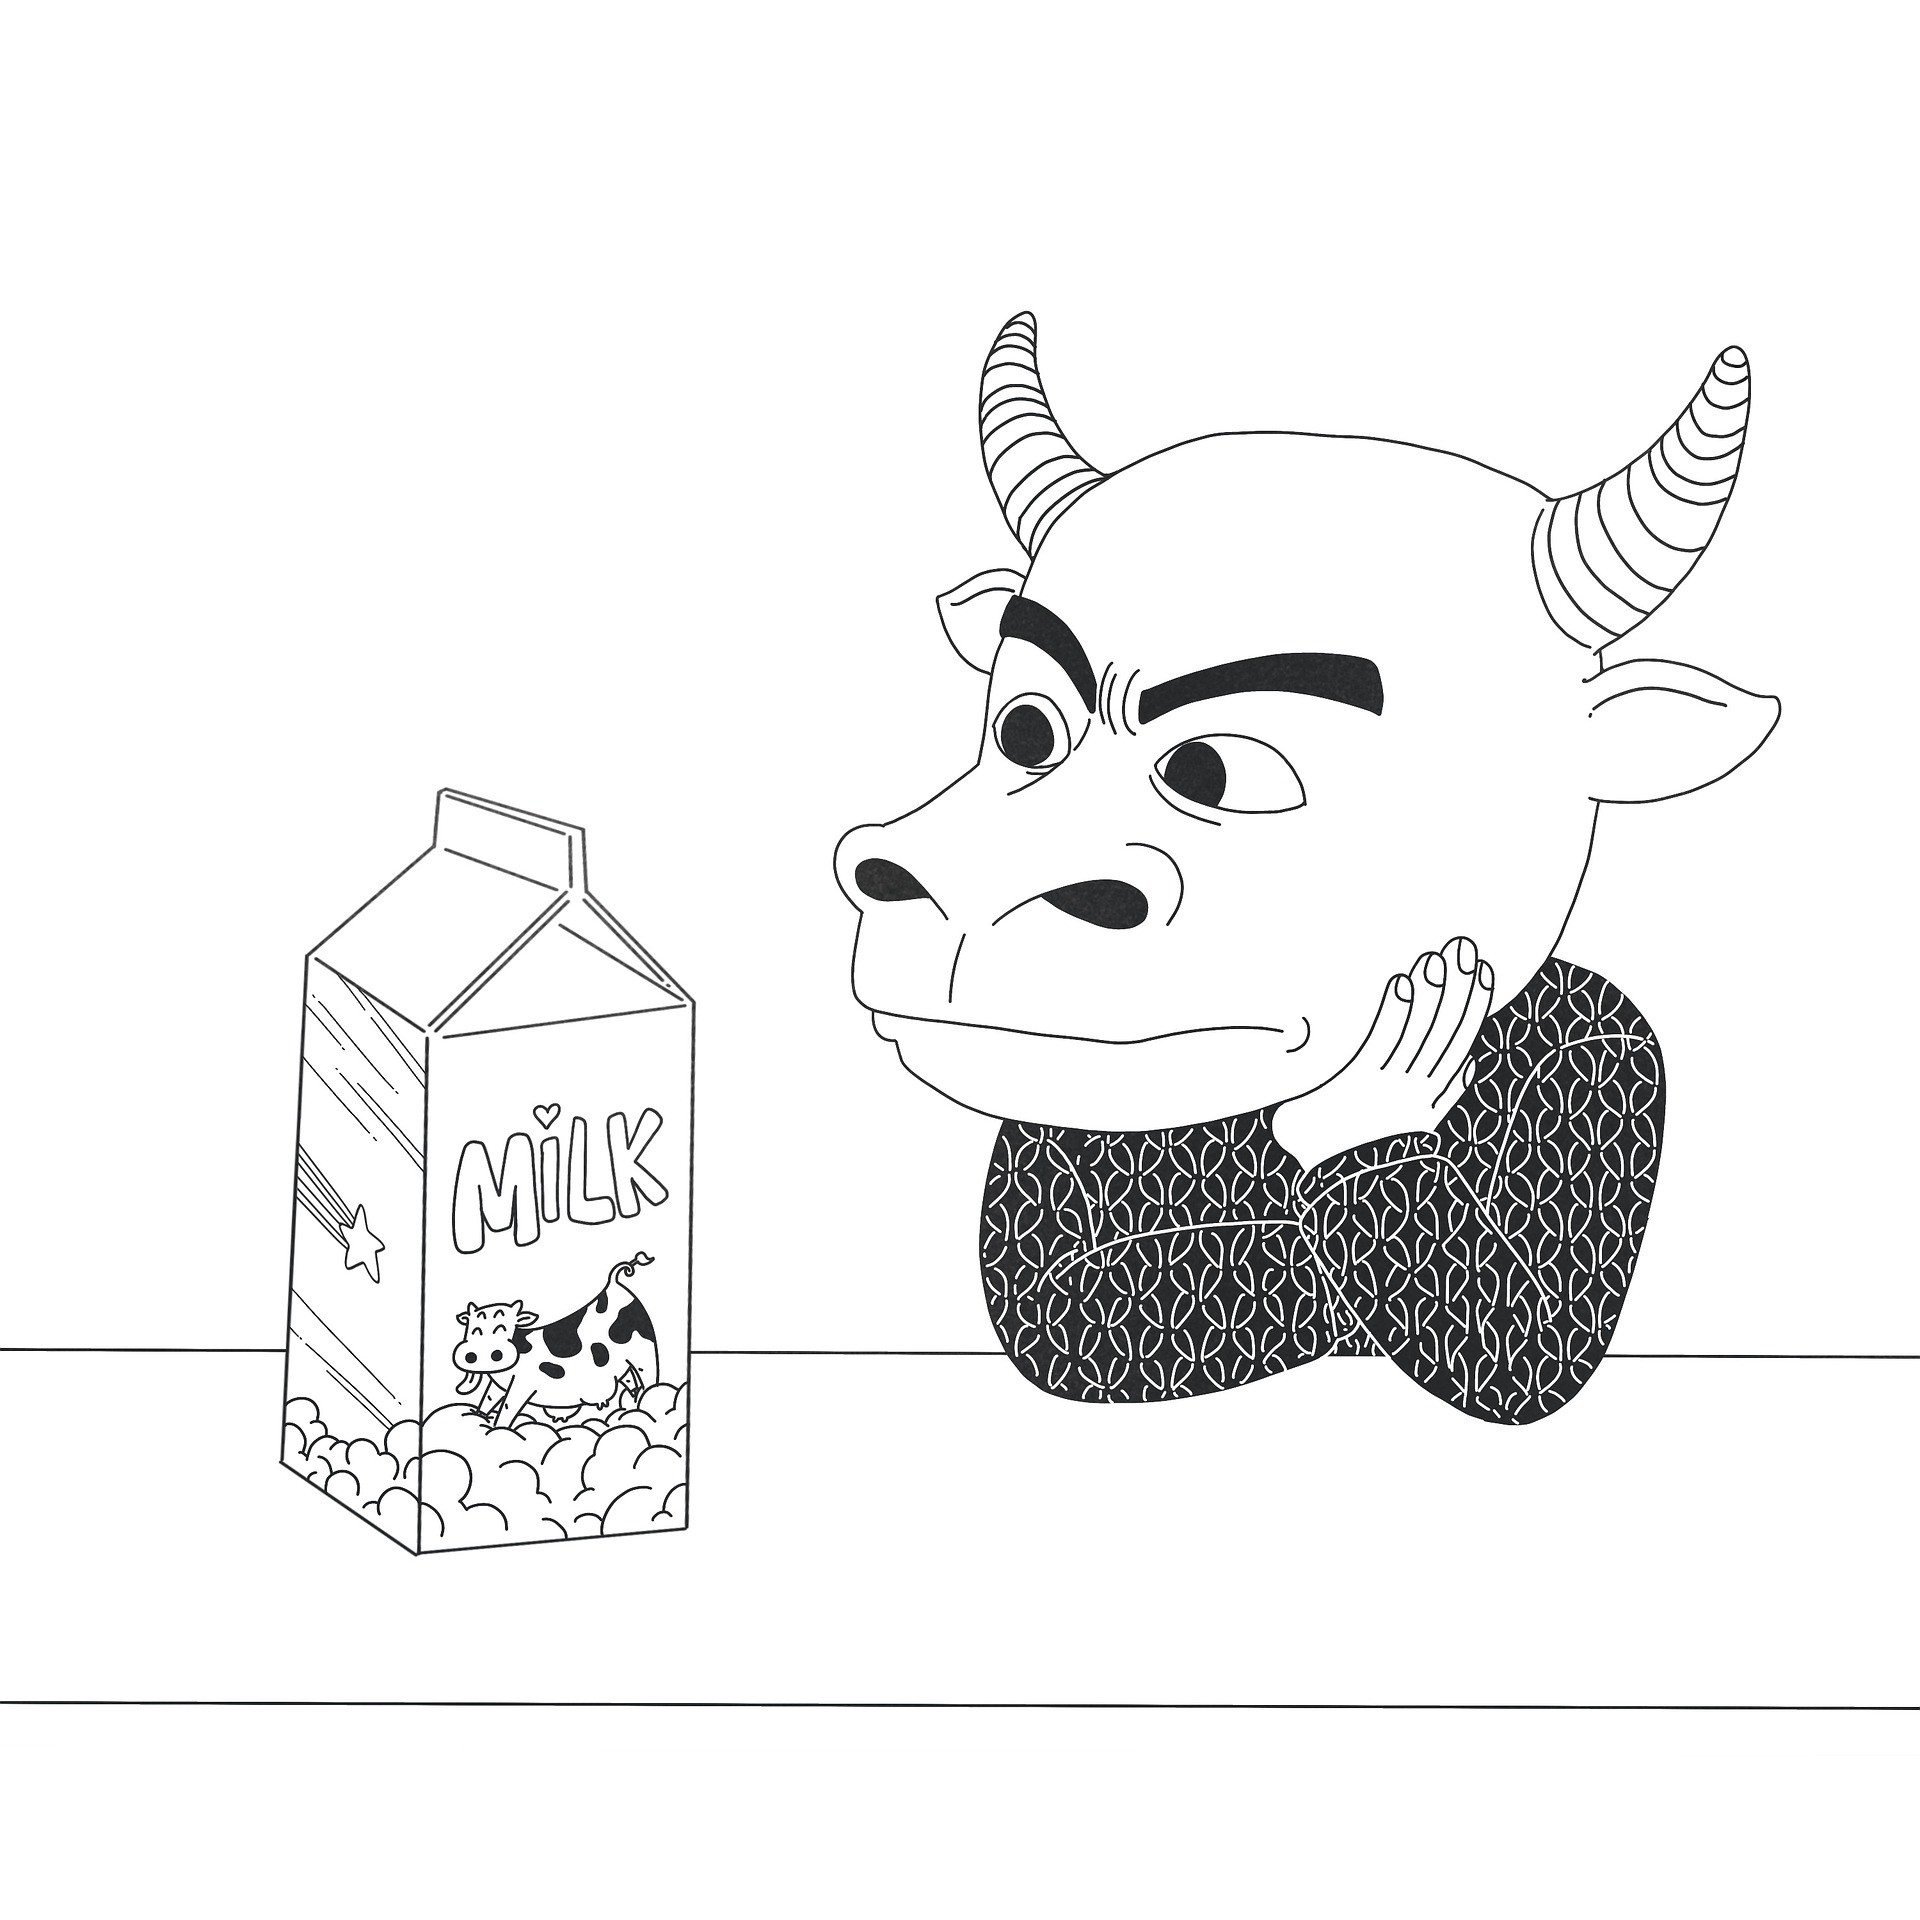 Disegno da colorare di toro che guarda un litro di latte